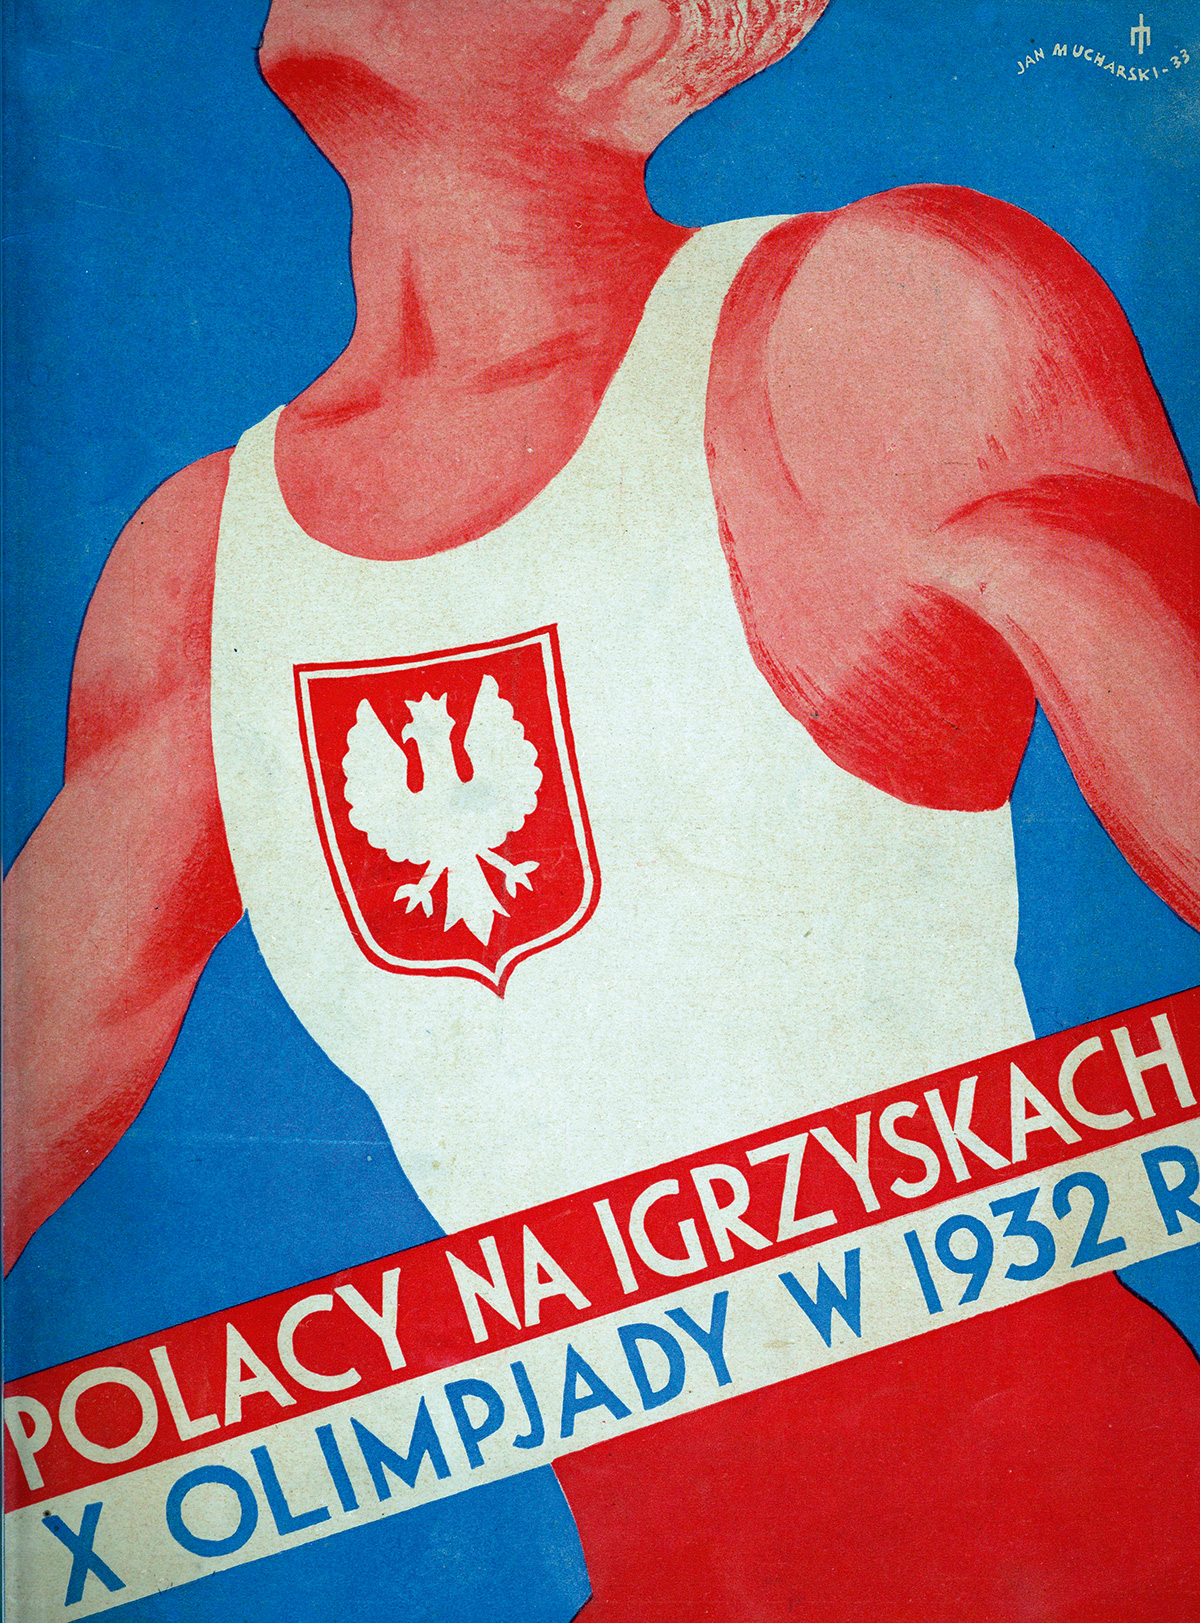 Okładka publikacji Polacy na igrzyskach X Olimpiady w 1932 r., Warszawa 1933. Źródło: Biblioteka Narodowa